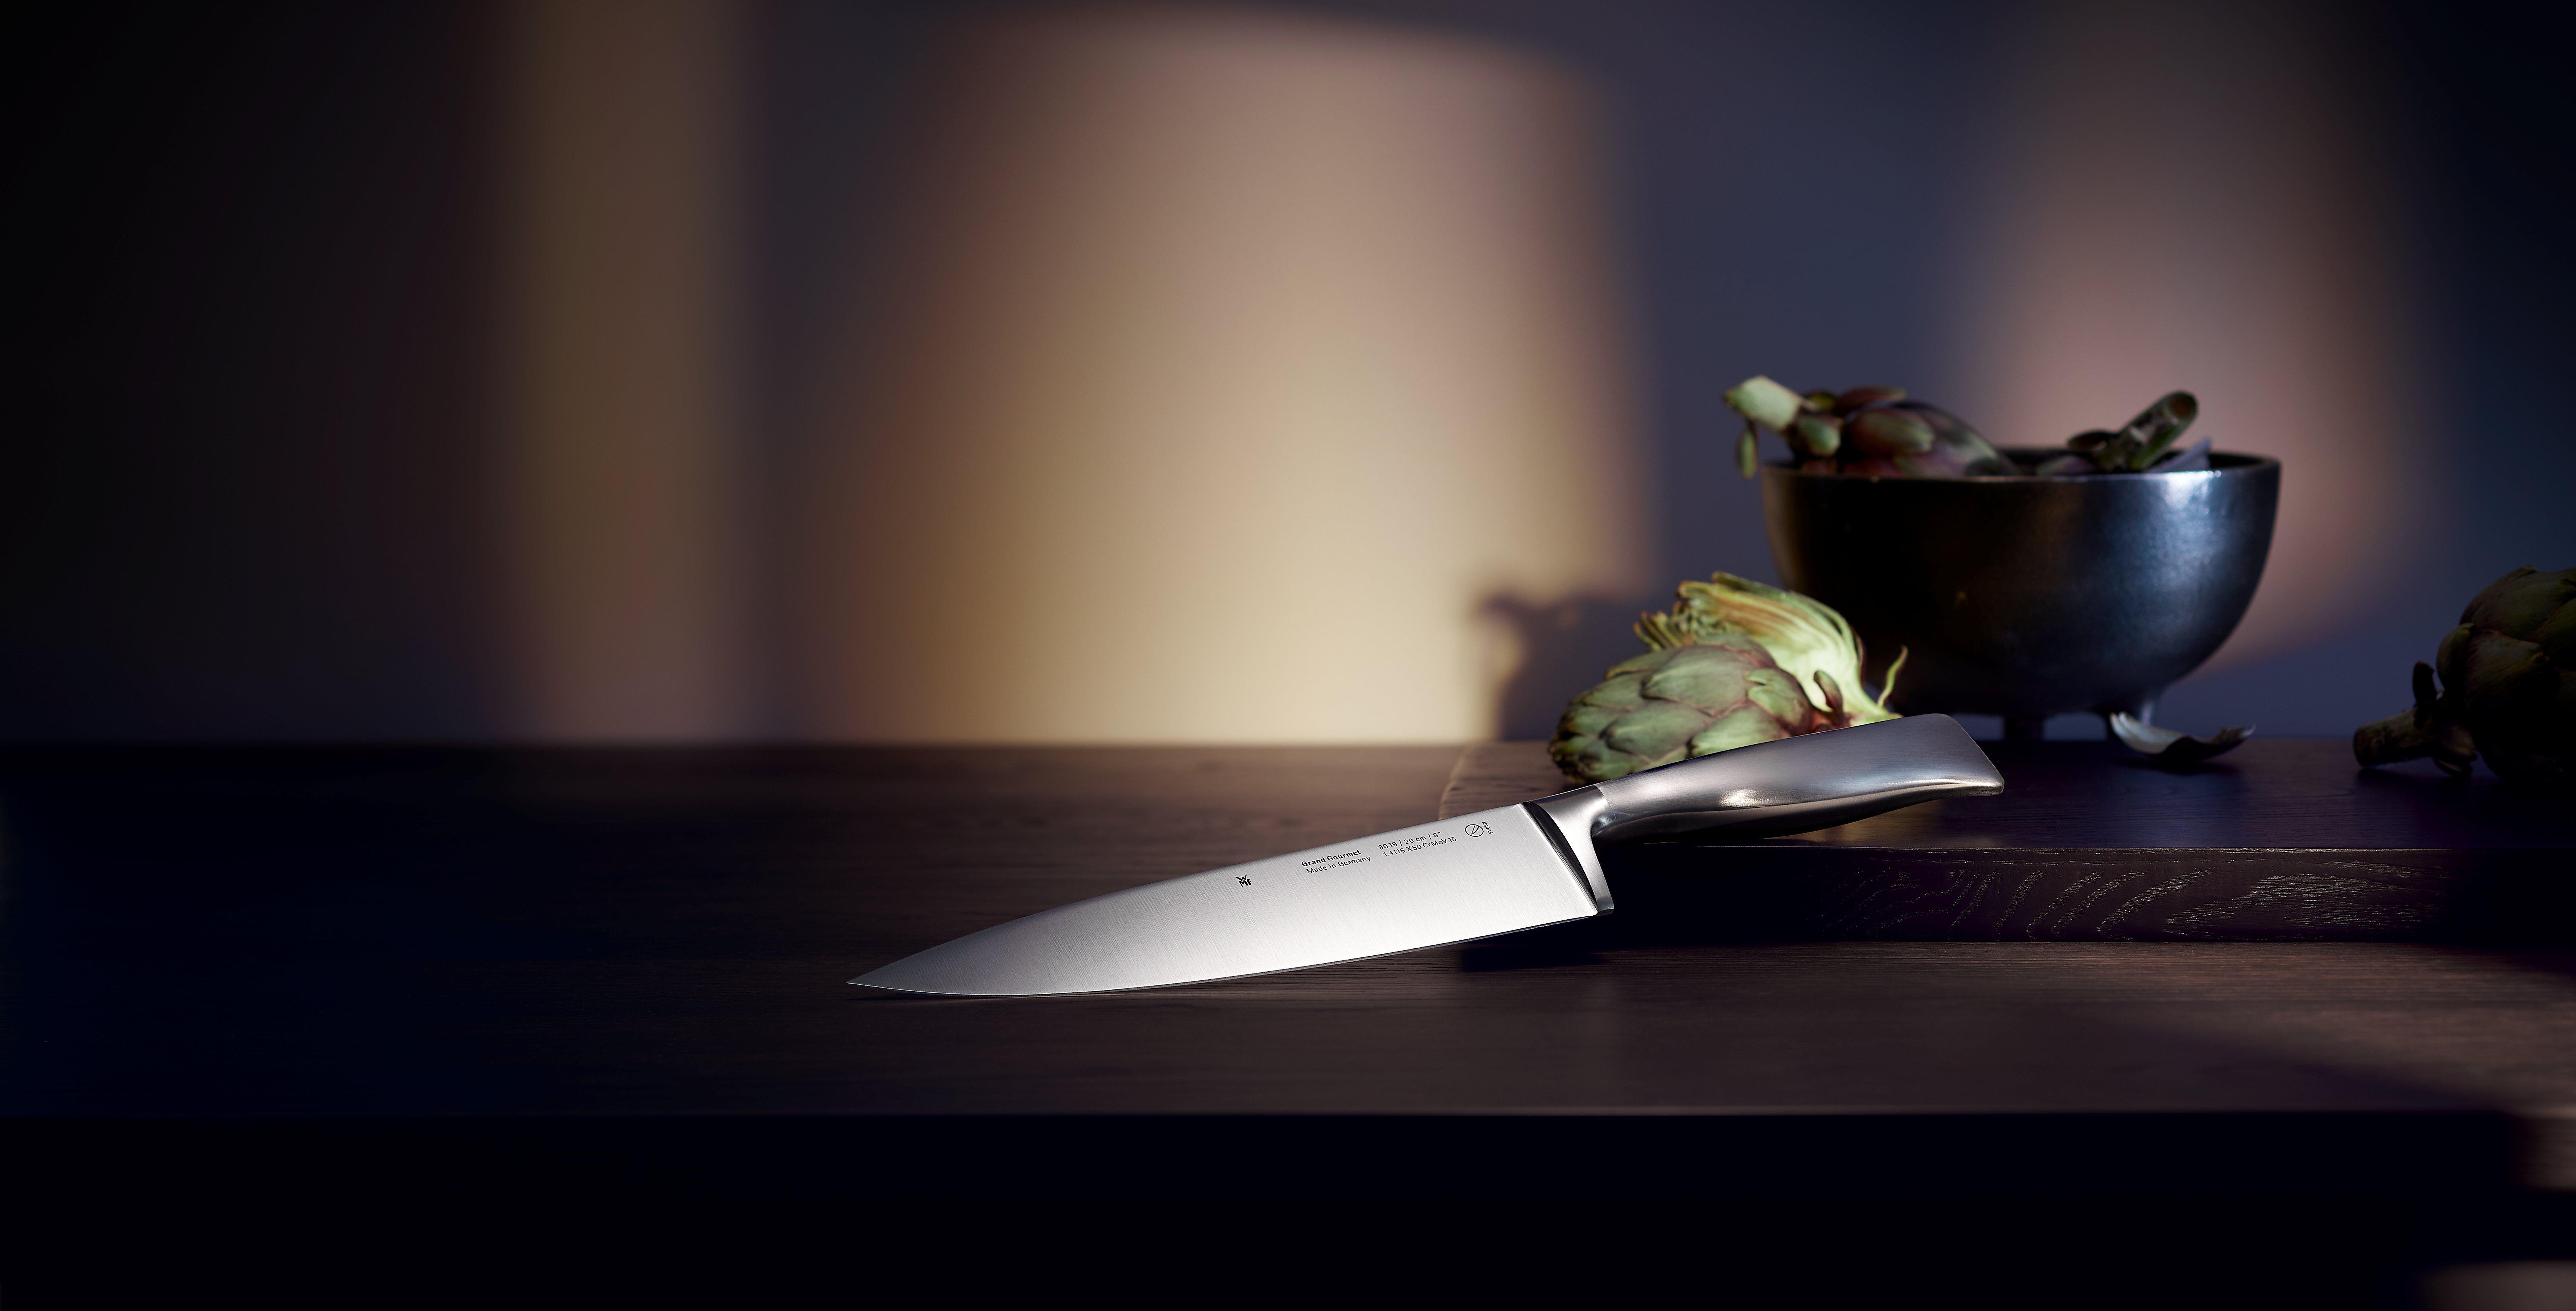 Los mejores cuchillos alemanes - Noblie